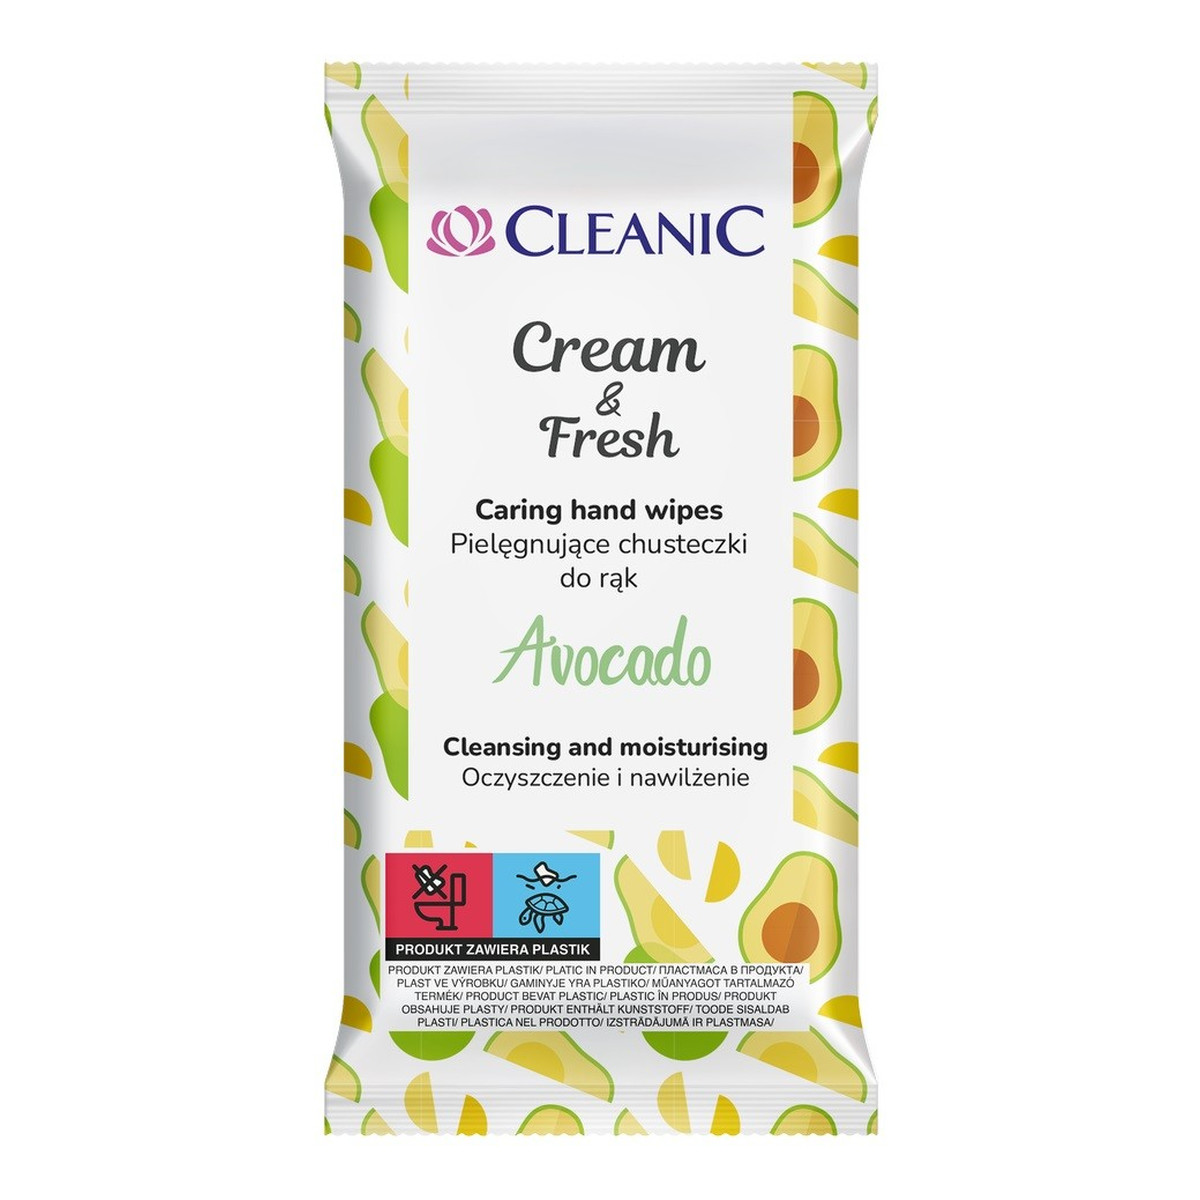 Cleanic pielęgnujące chusteczki do rąk cream & fresh-avocado 1op-15szt